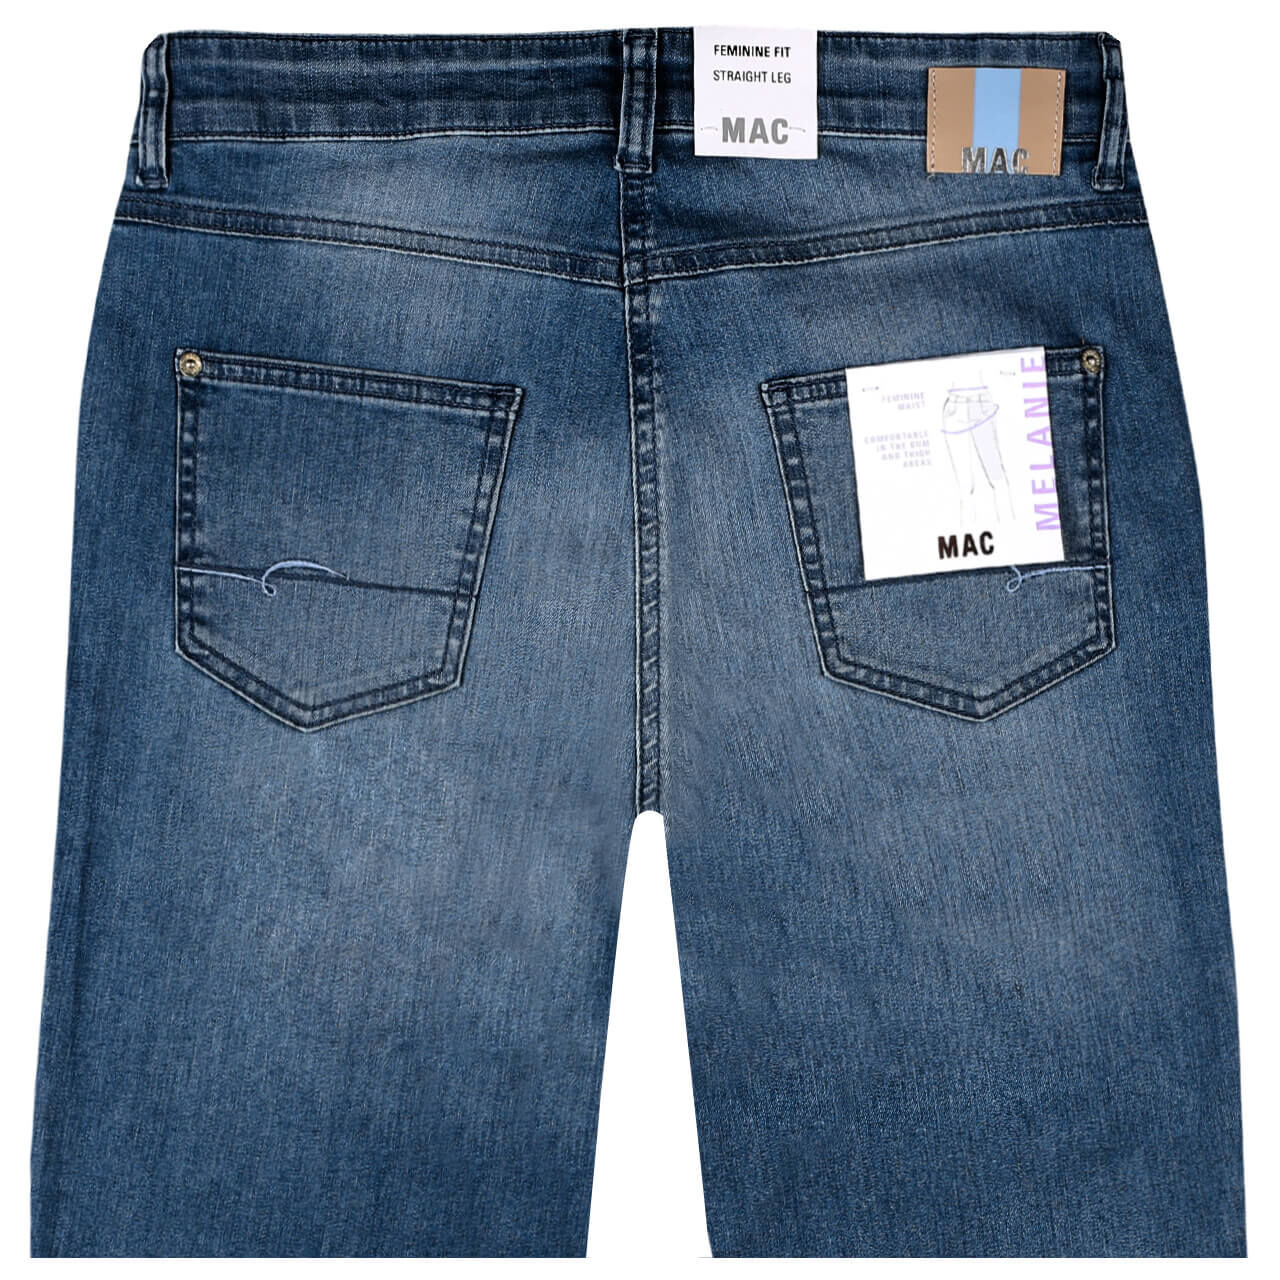 MAC Jeans Melanie für Damen in Mittelblau verwaschen, FarbNr.: D546